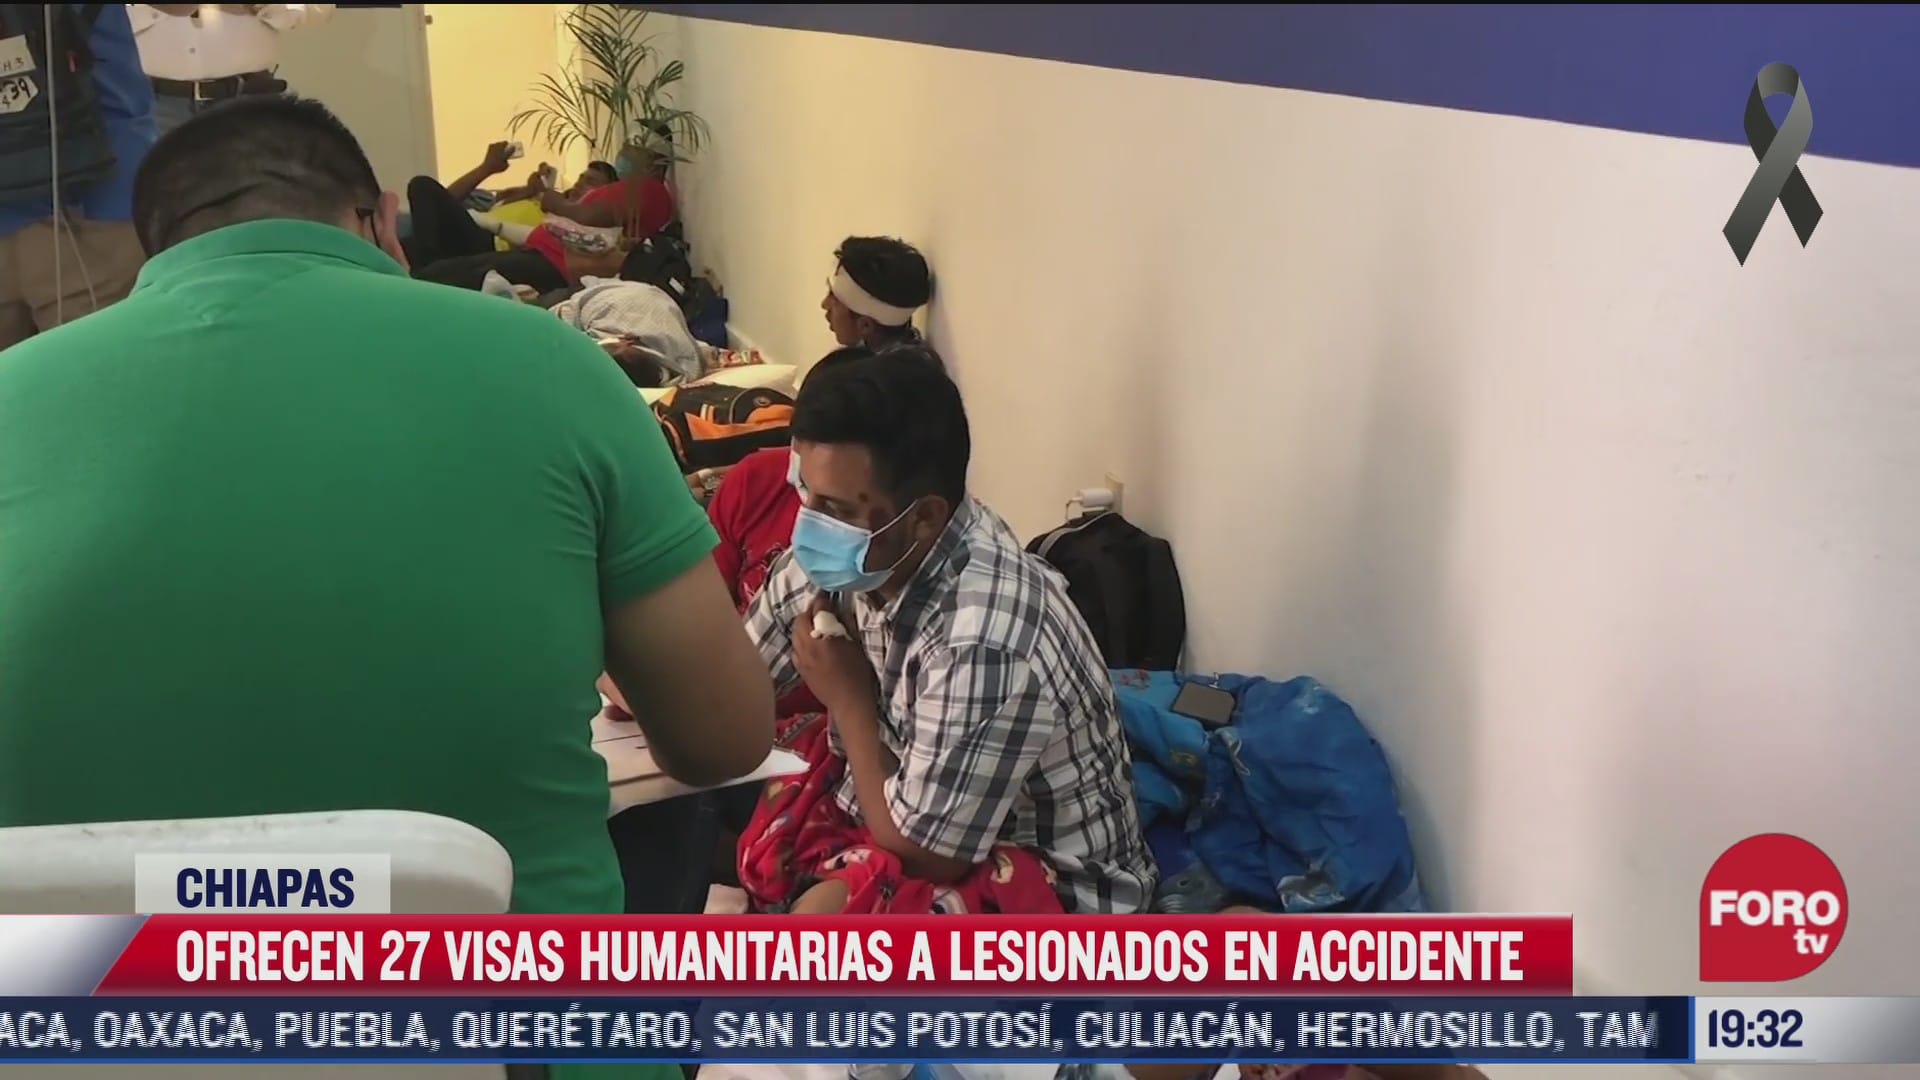 inm ofrece 27 visas humanitarias a lesionados en accidente en chiapas